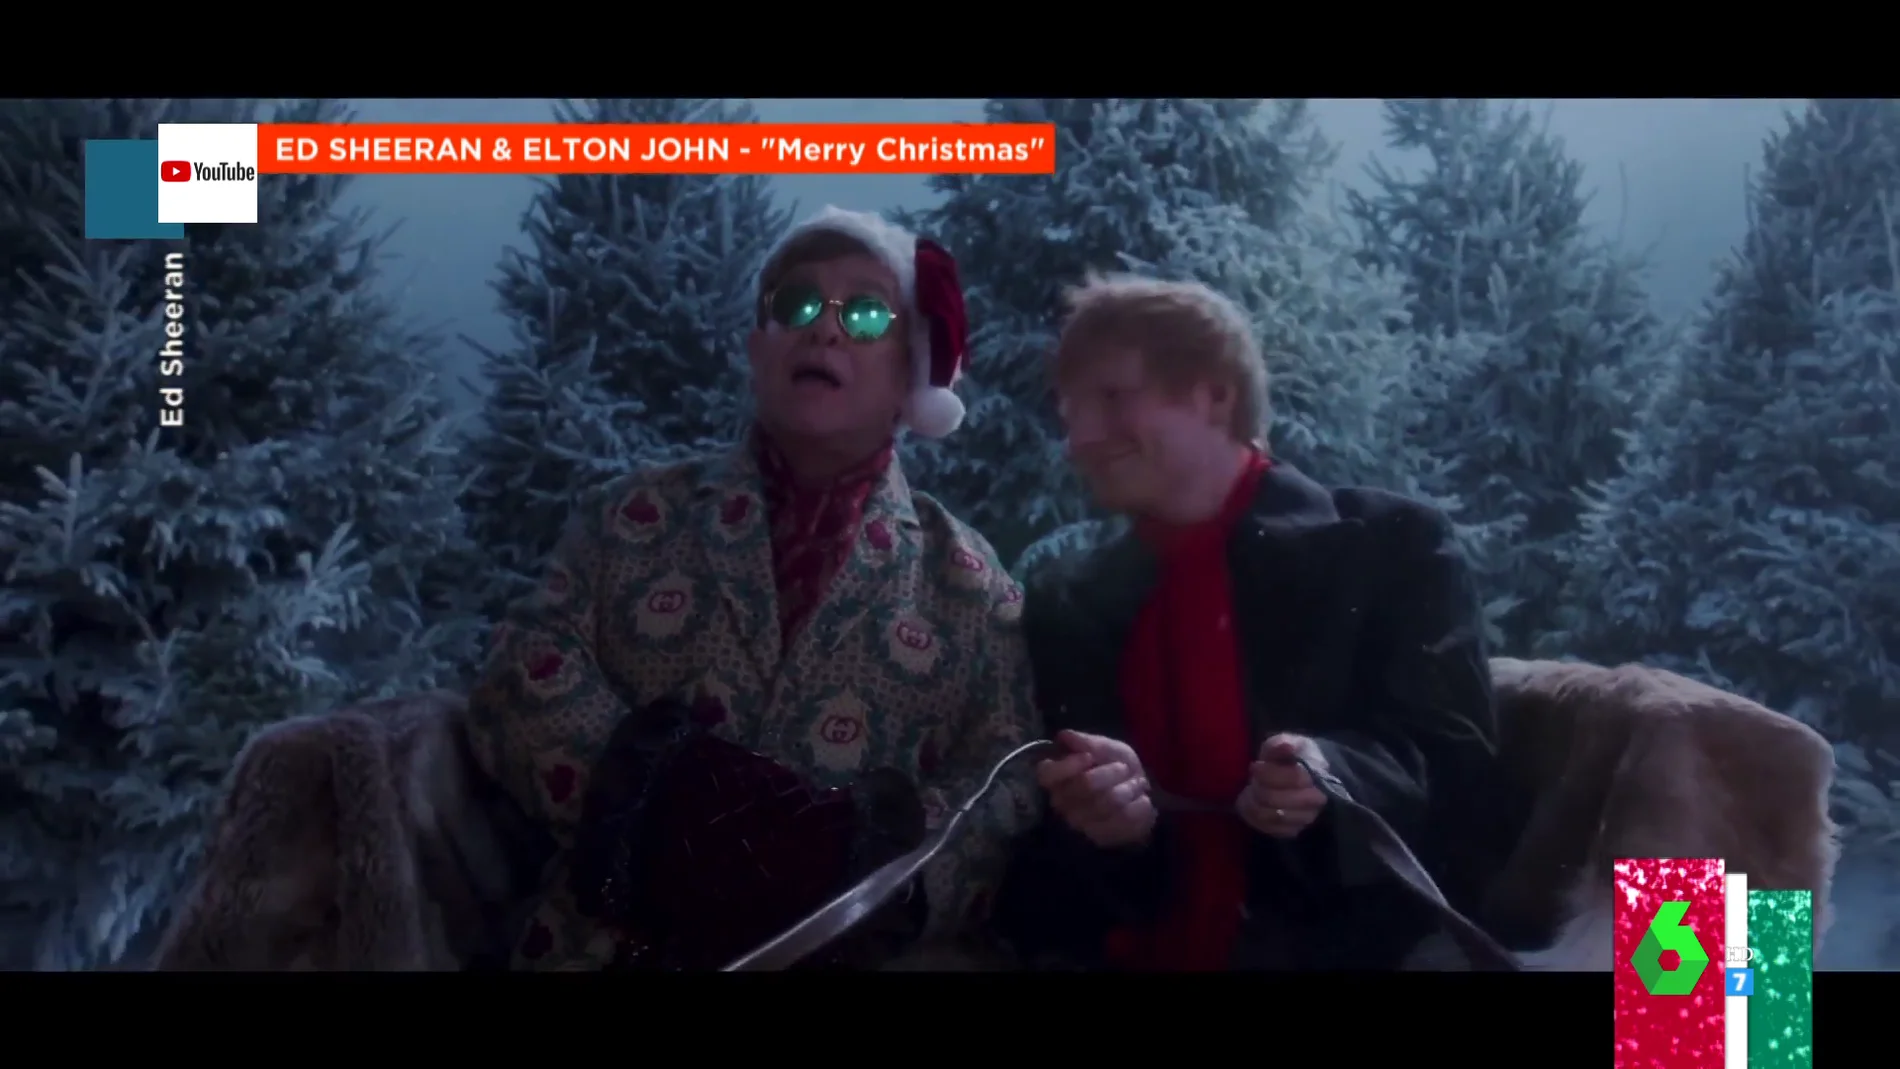 El 'temazo' navideño con el que Ed Sheeran y Elton John tratan de desbancar a Mariah Carey